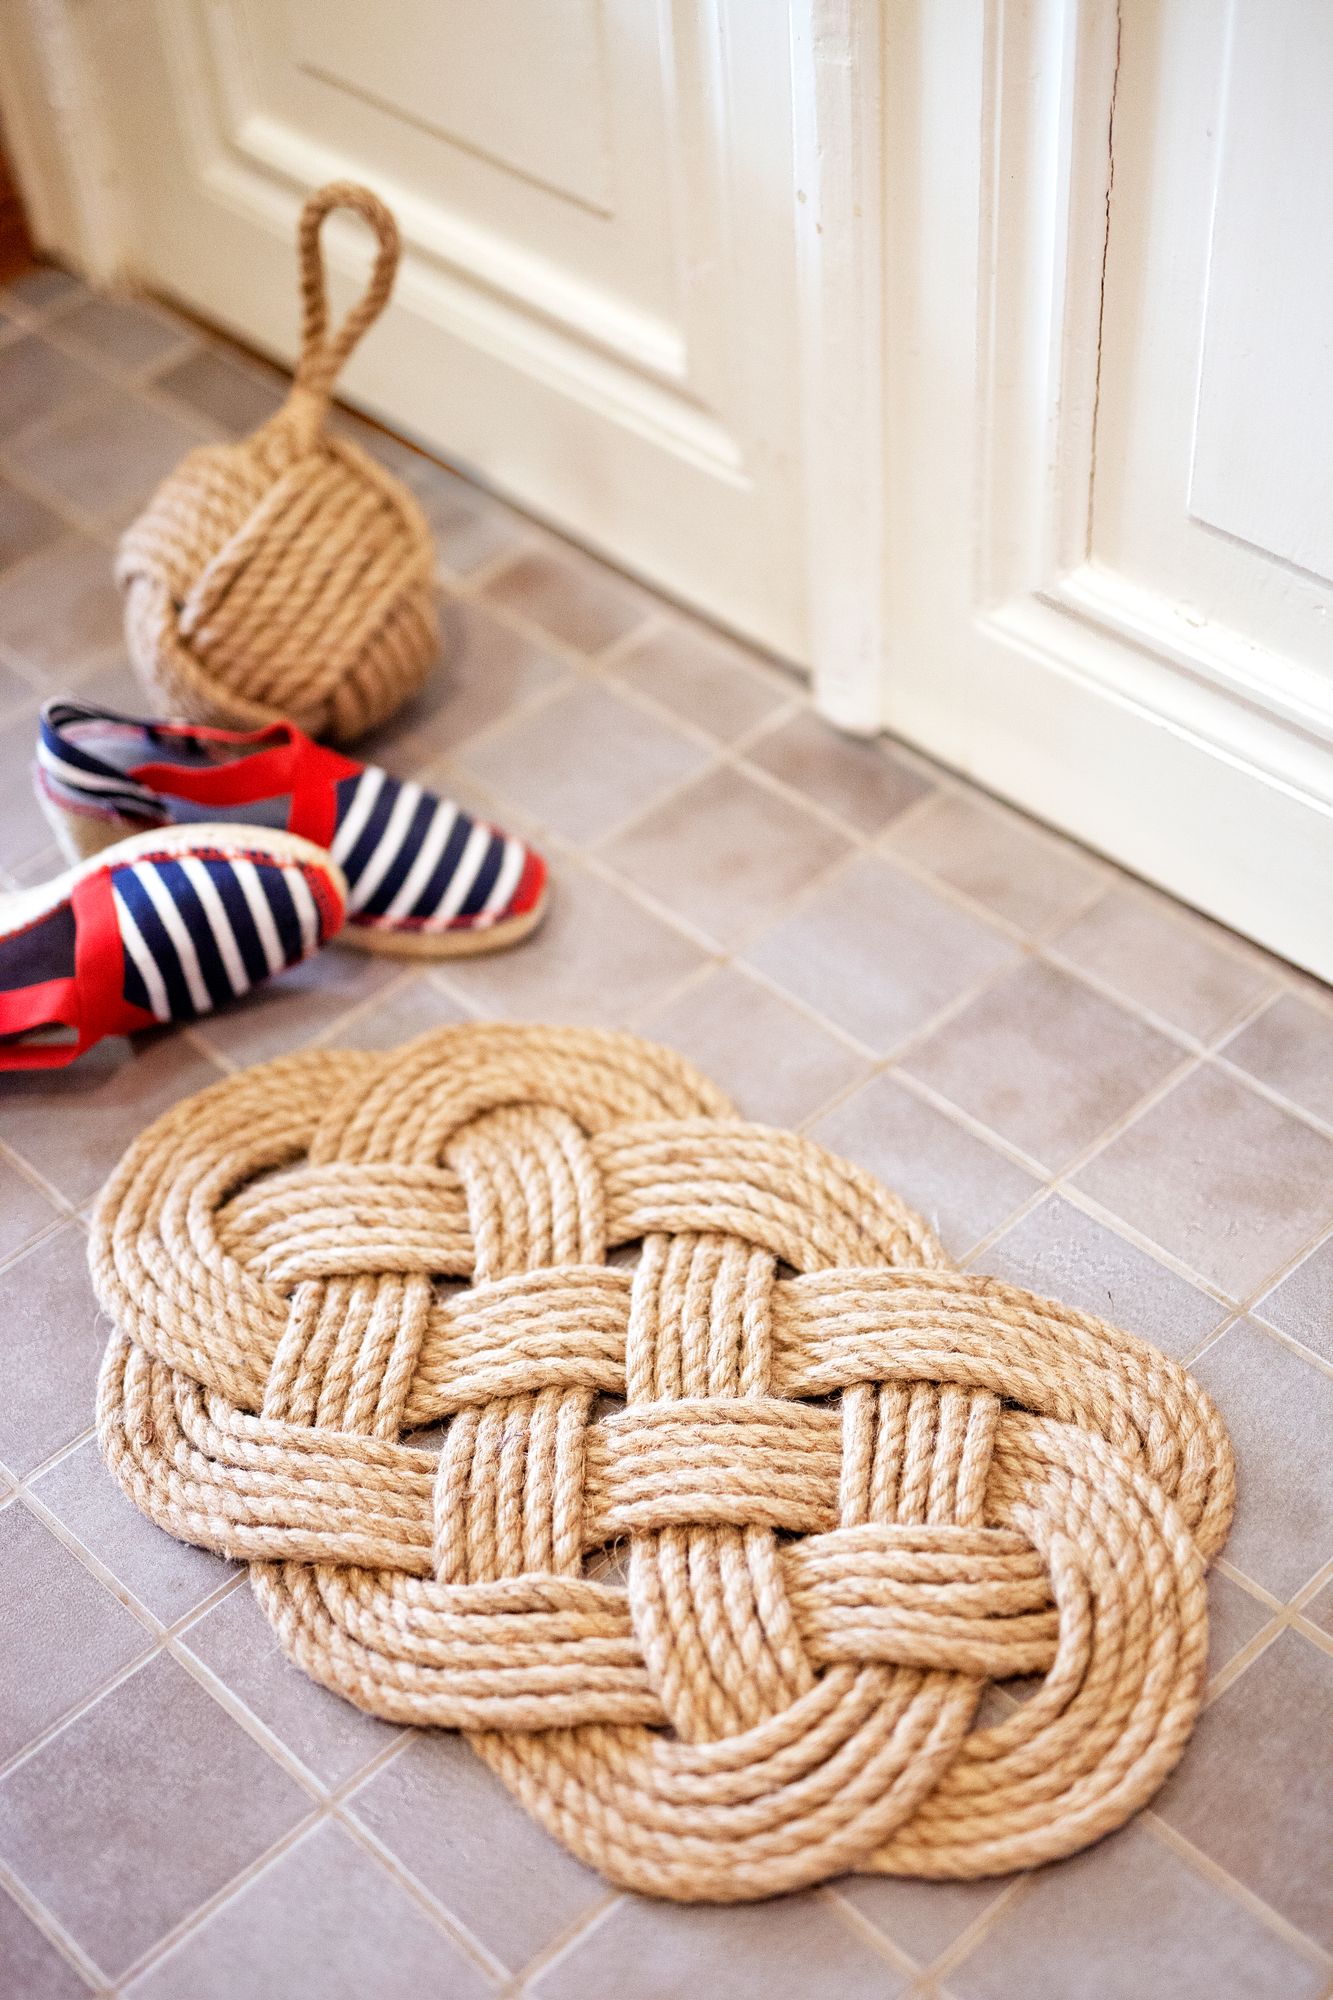 Merimiehen matto käy myös pannunaluseksi, kunhan narun tai köyden paksuuden valitsee sen mukaisesti hieman ohuemmaksi kuin matossa.